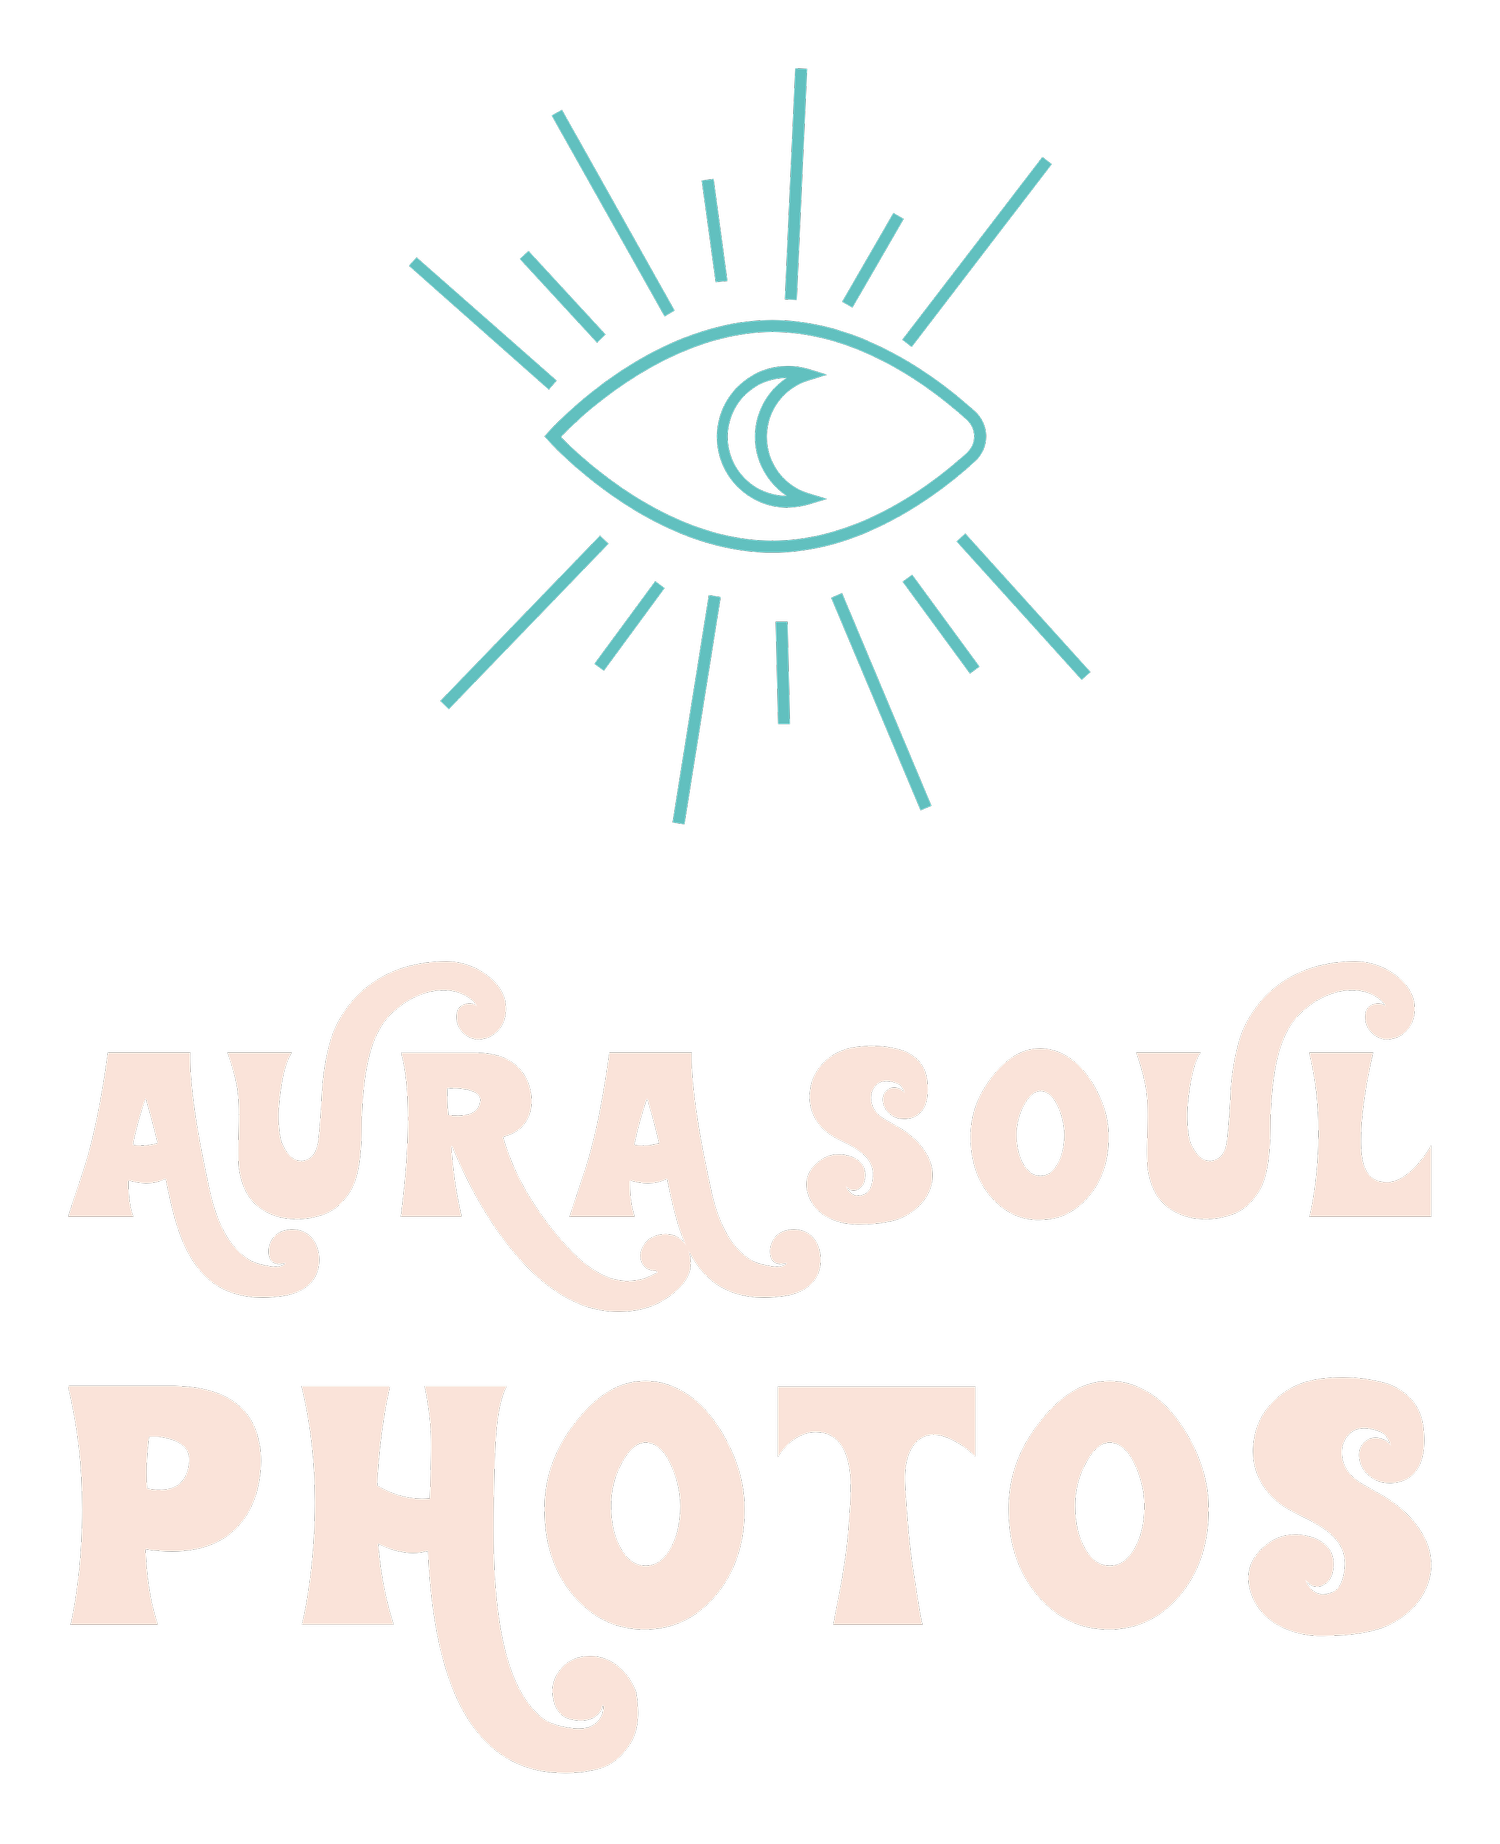 Aura Soul Photos